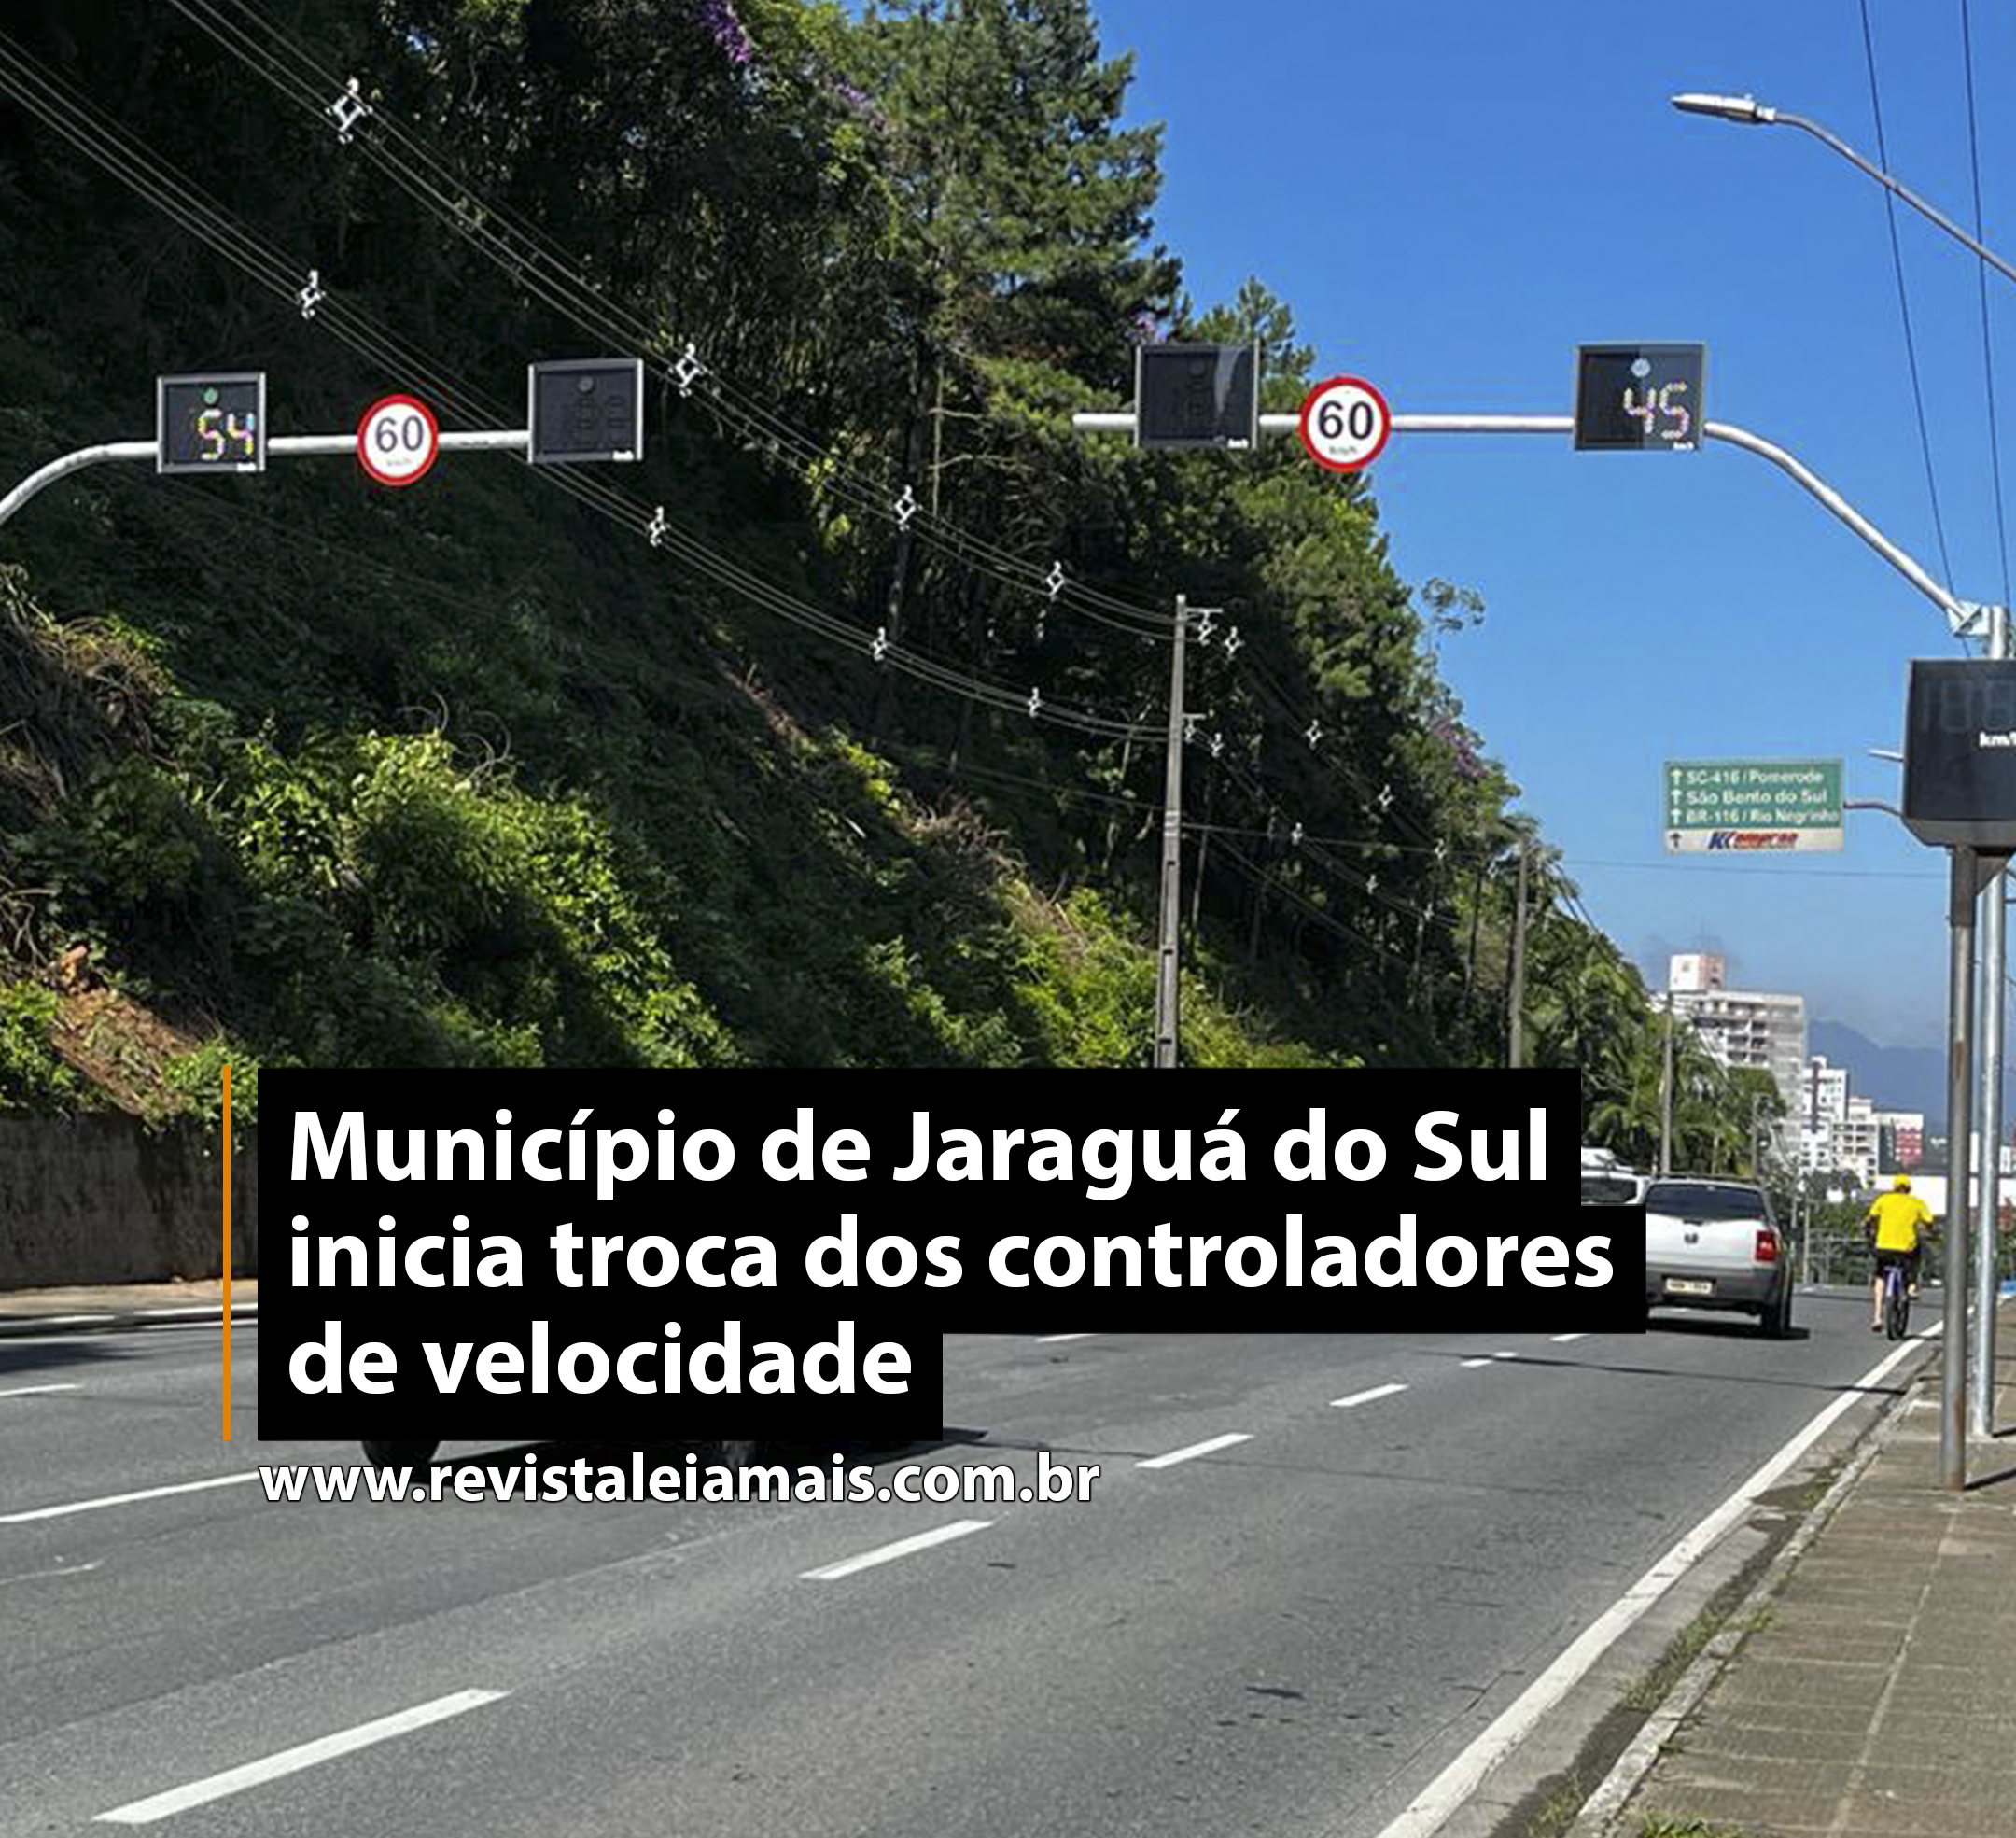 Município de Jaraguá do Sul inicia troca dos controladores de velocidade